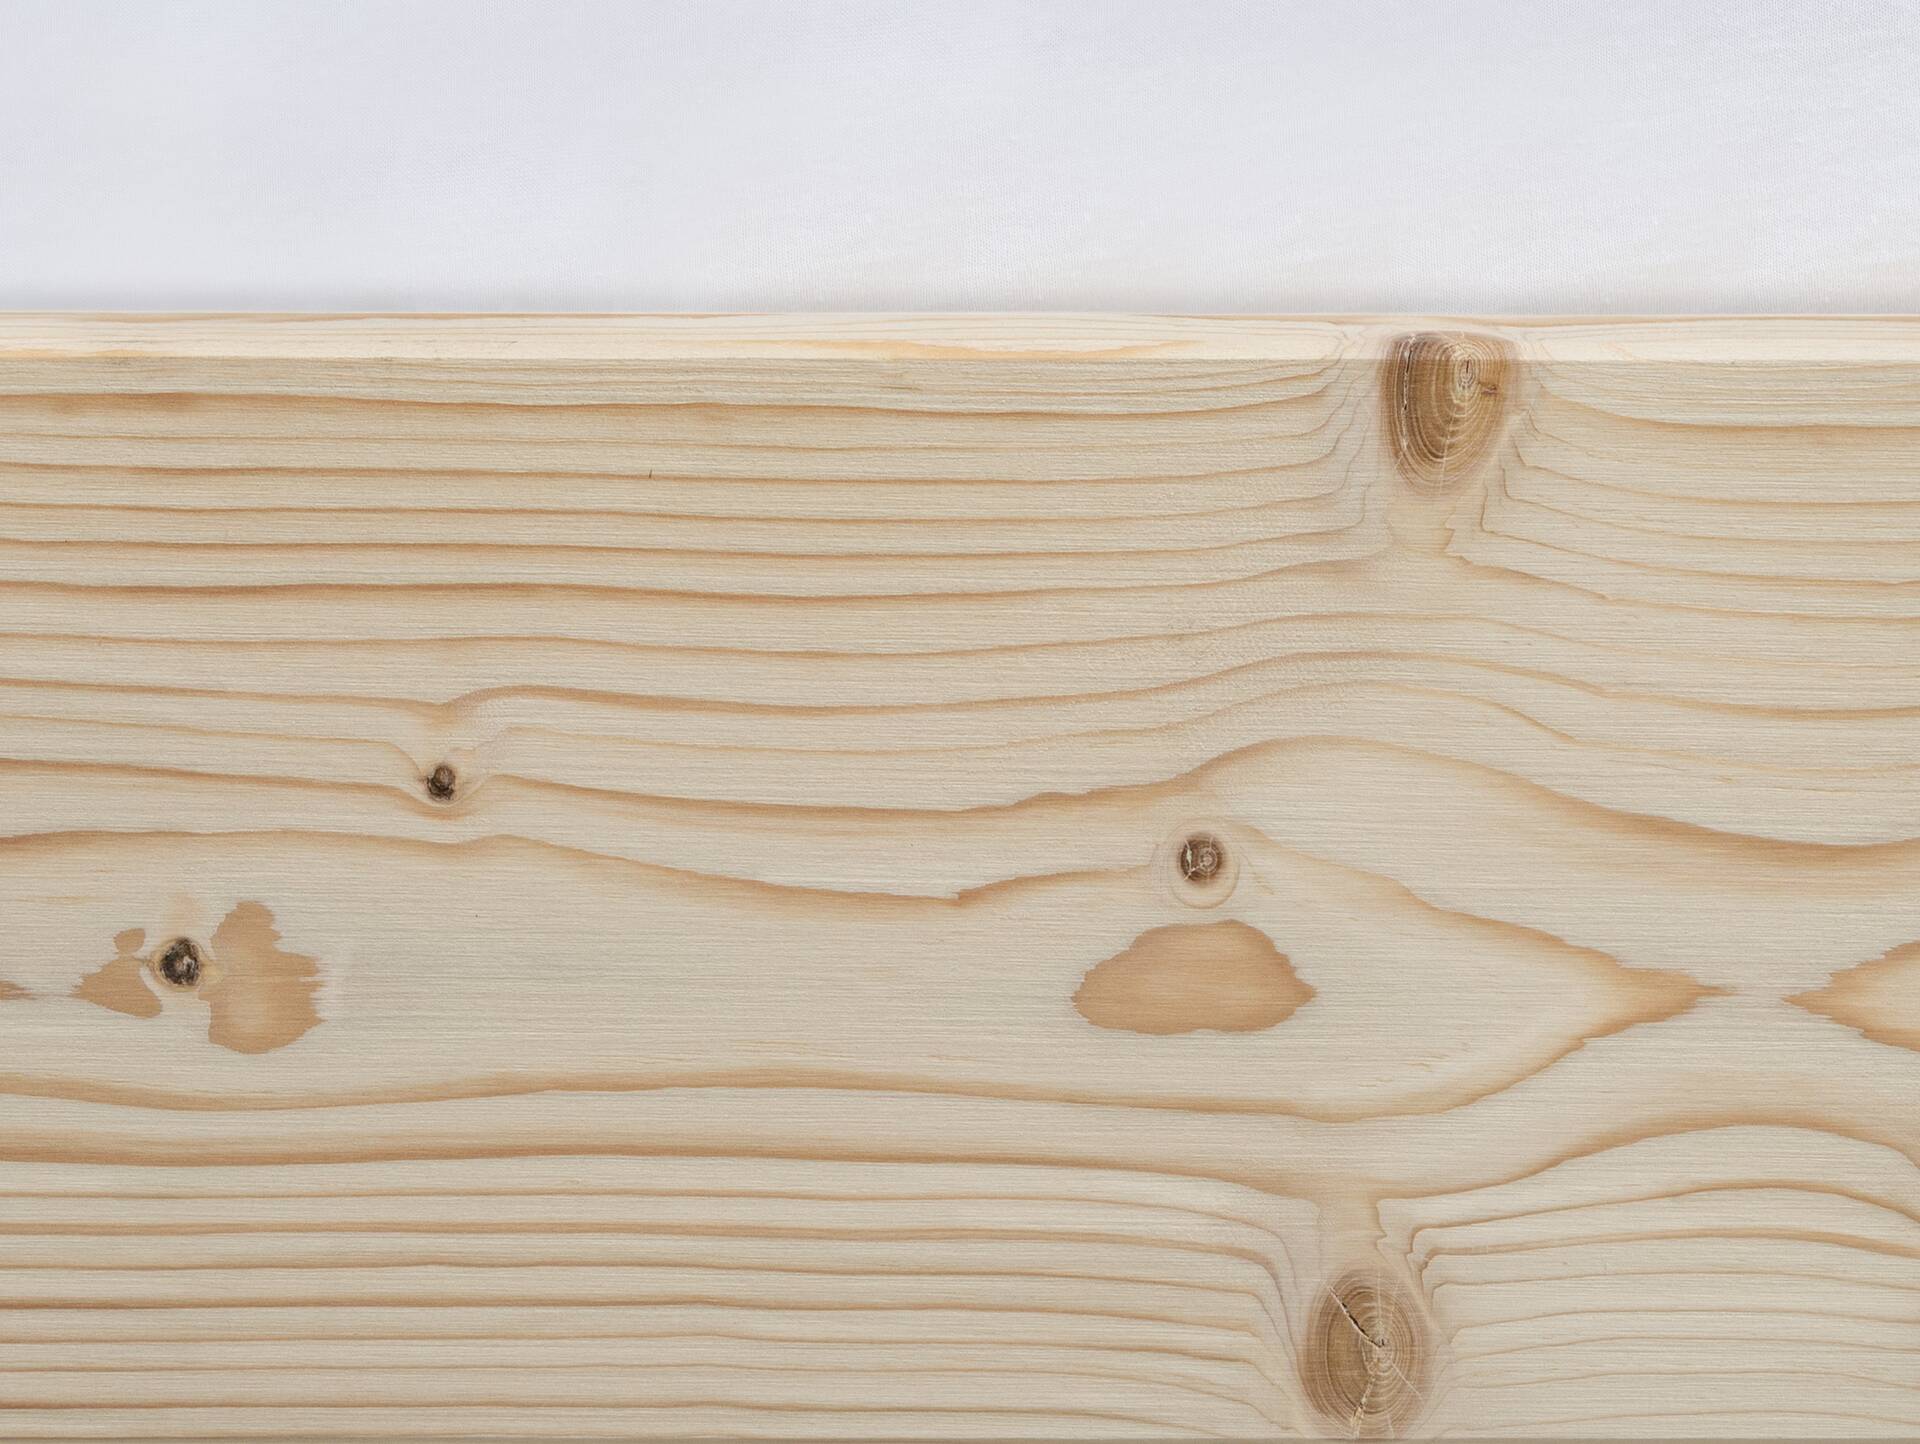 LUKY Kufenbett, Material Massivholz, Fichte massiv, Kufen schwarz, mit/ohne Kopfteil 160 x 220 cm | natur | mit Kopfteil